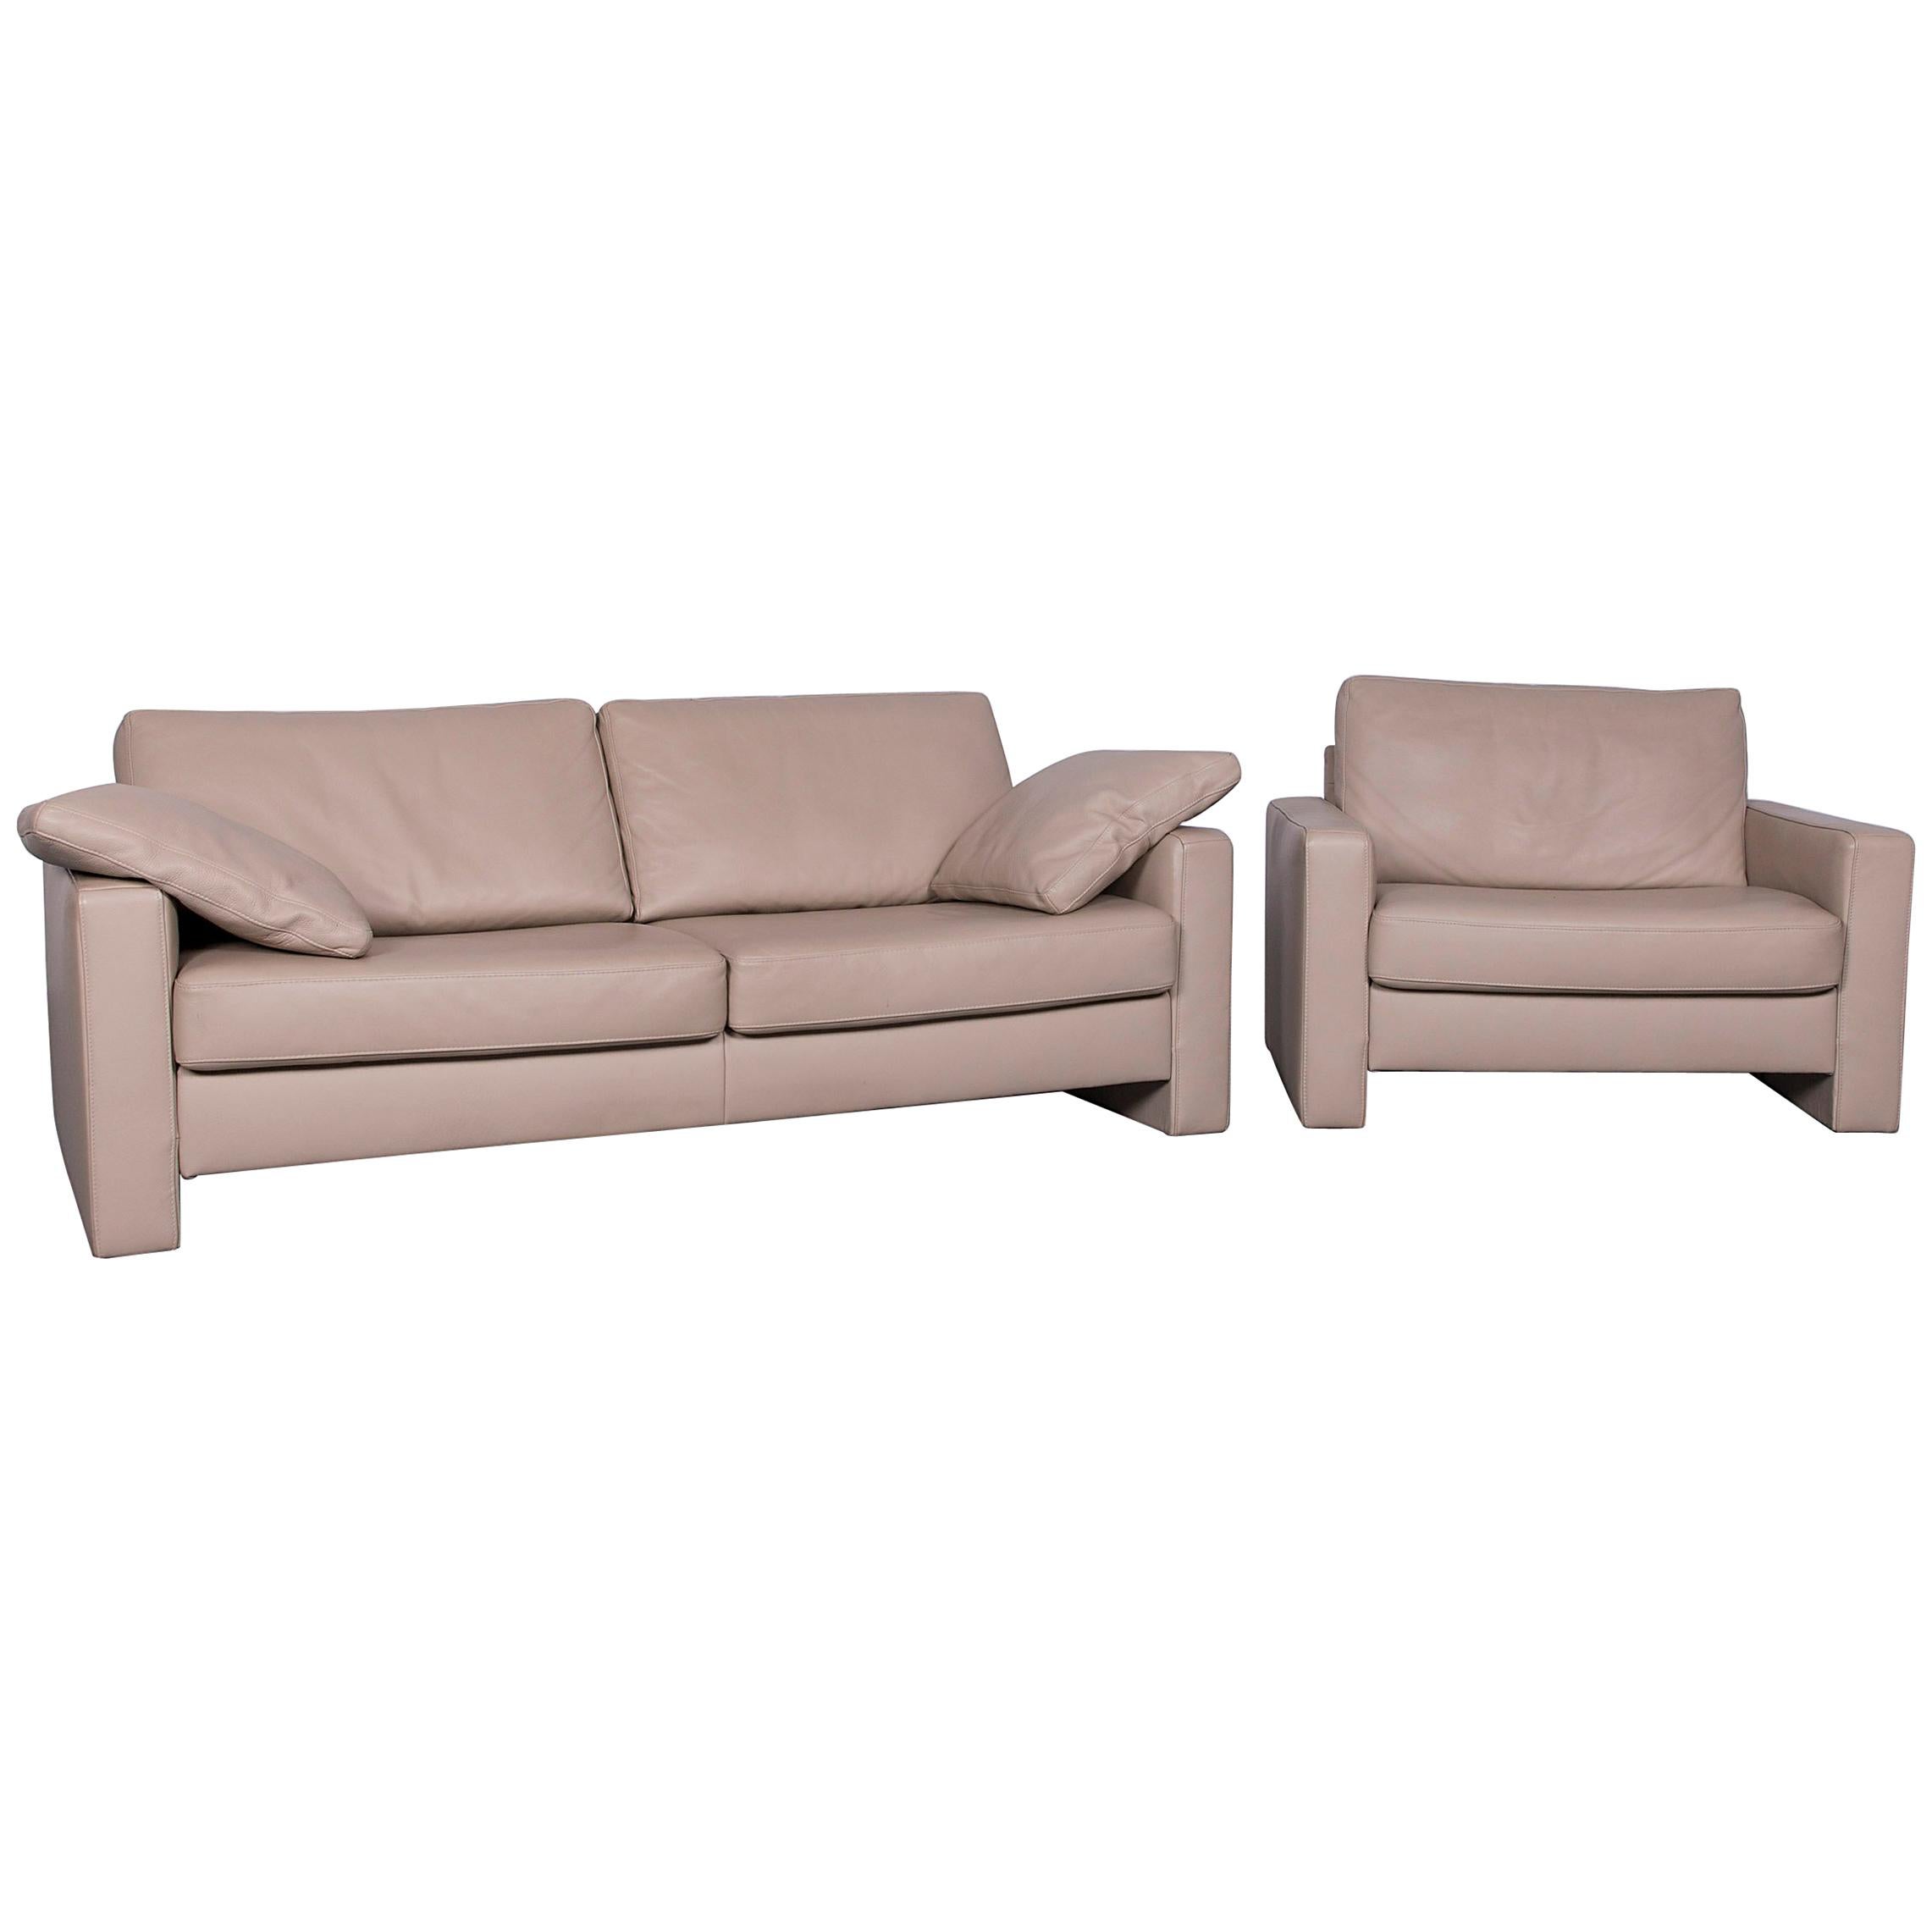 Ewald Schillig Designer Leather Sofa Armchair Set Brown Beige Two-Seat